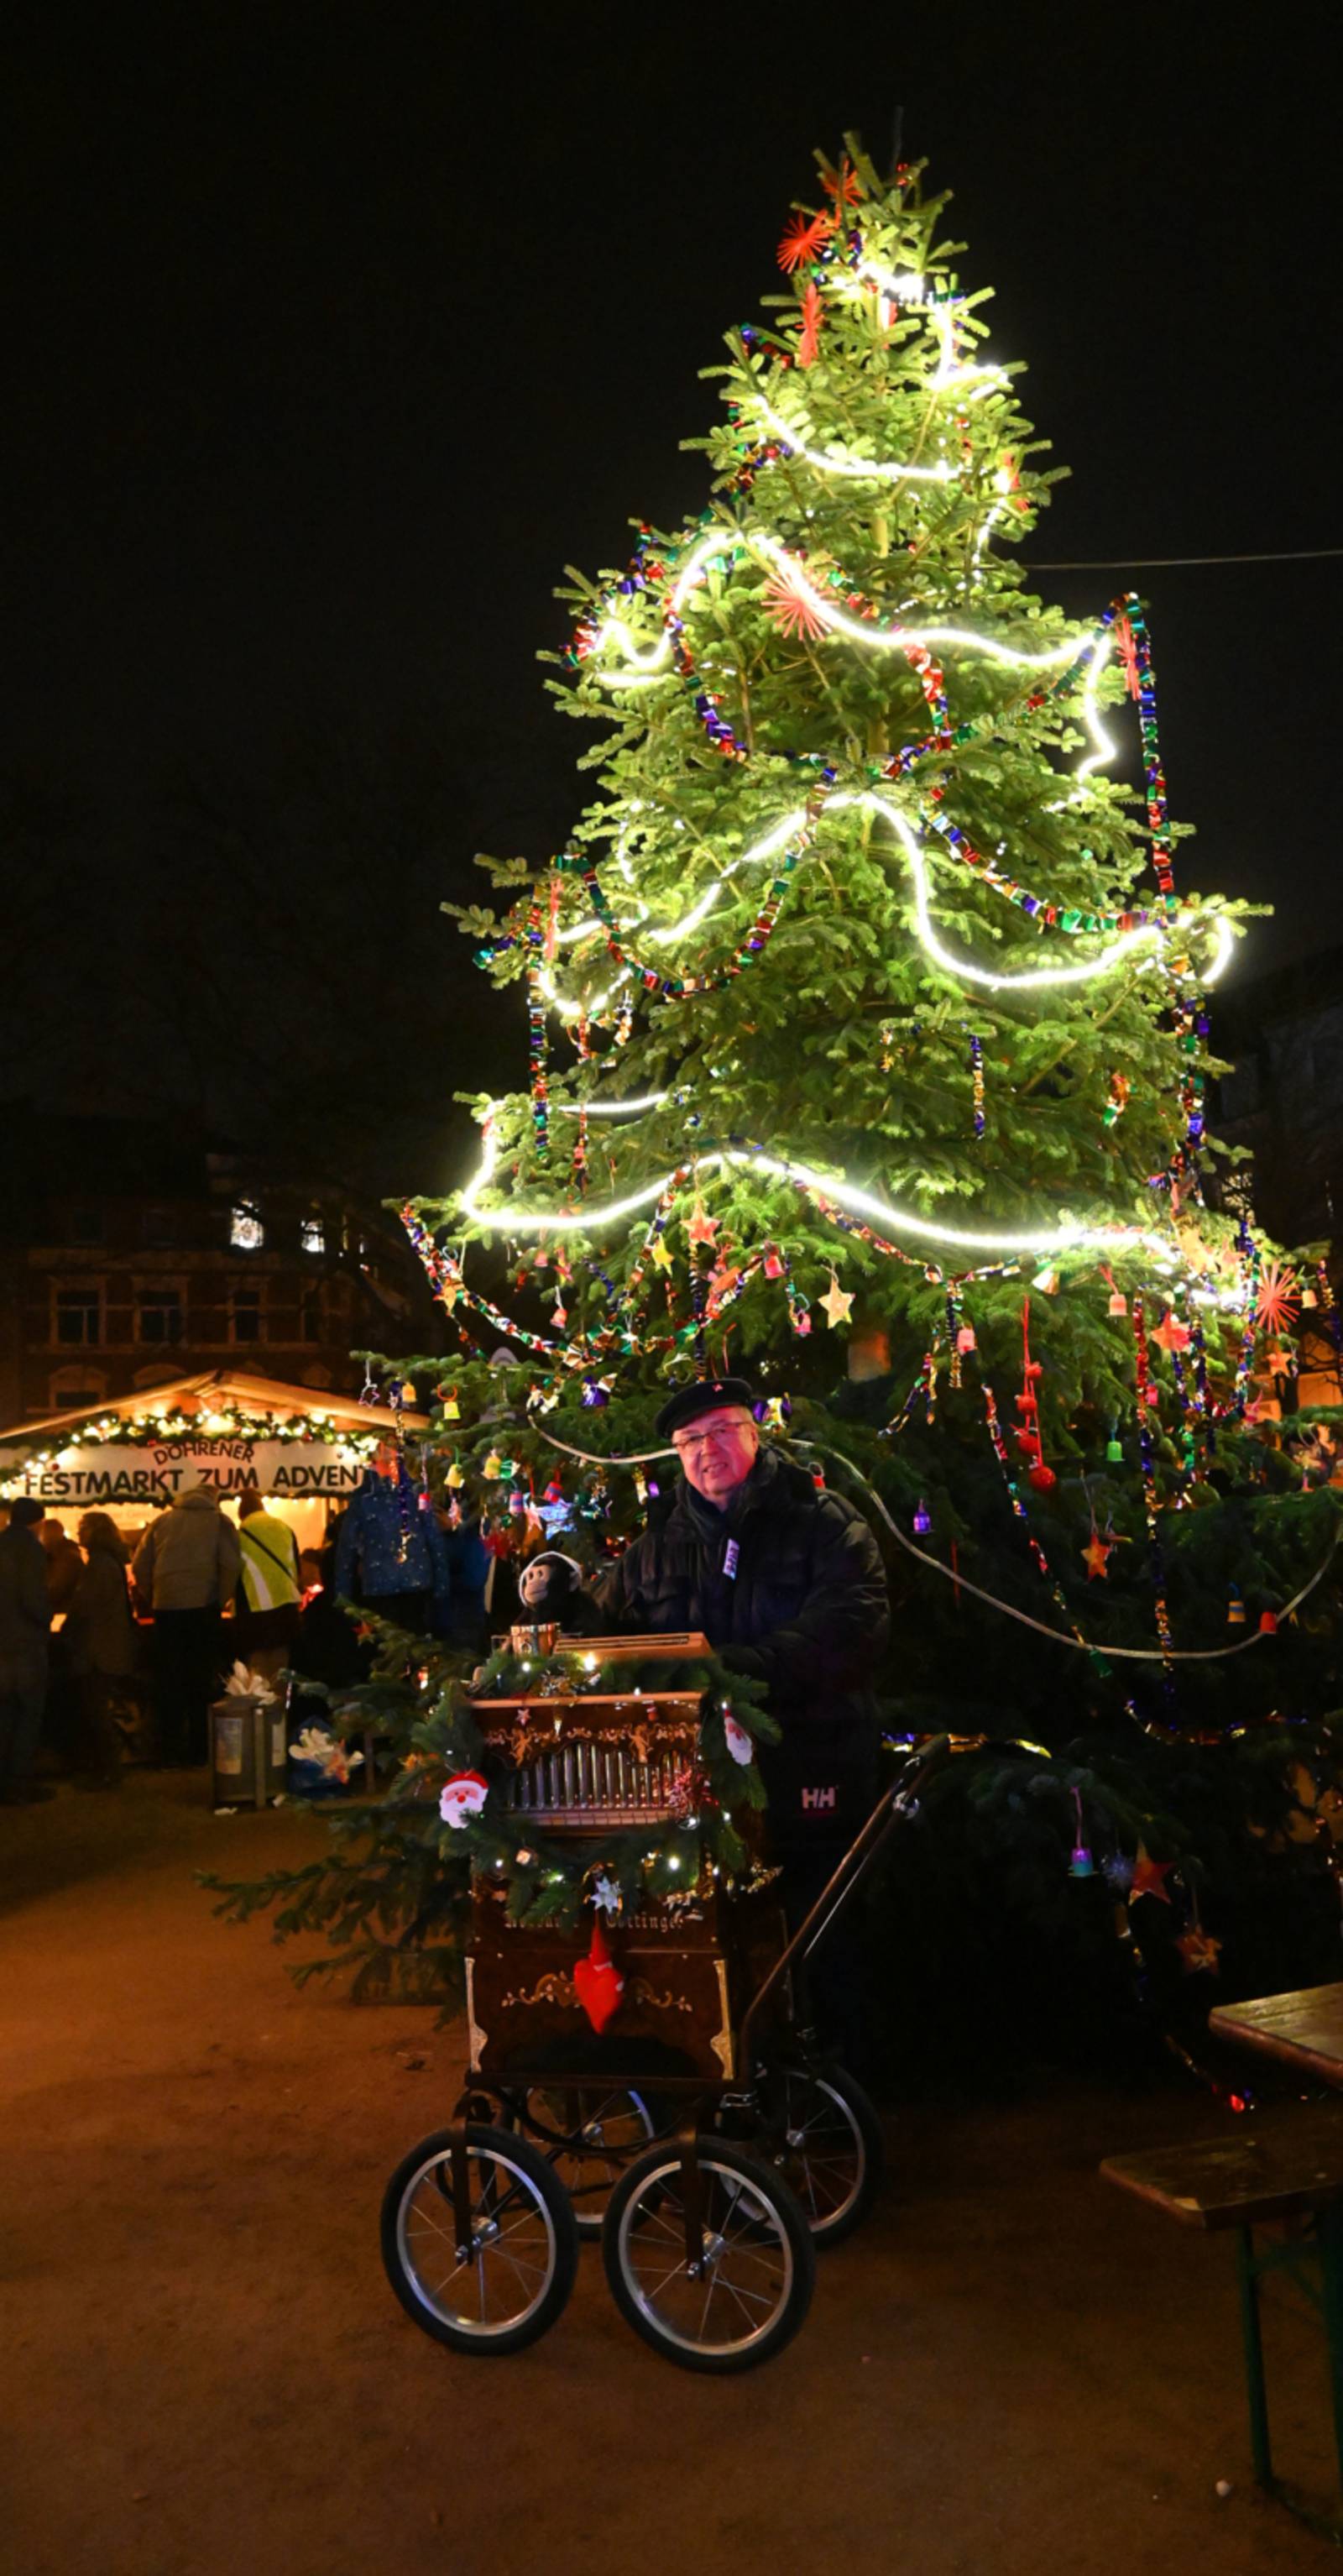 Auf dem Bild ist ein großer Weihnachtsbaum im Dunkeln zu sehen. Vor dem Weihnachtsbaum steht ein Straßen-Orgelspieler. Hinter dem Weihnachtsbaum ist eine Weihnachtsmarktbude mit der Aufschrift: "DÖHRENER FESTMARKT ZUM ADVENT" zu sehen.